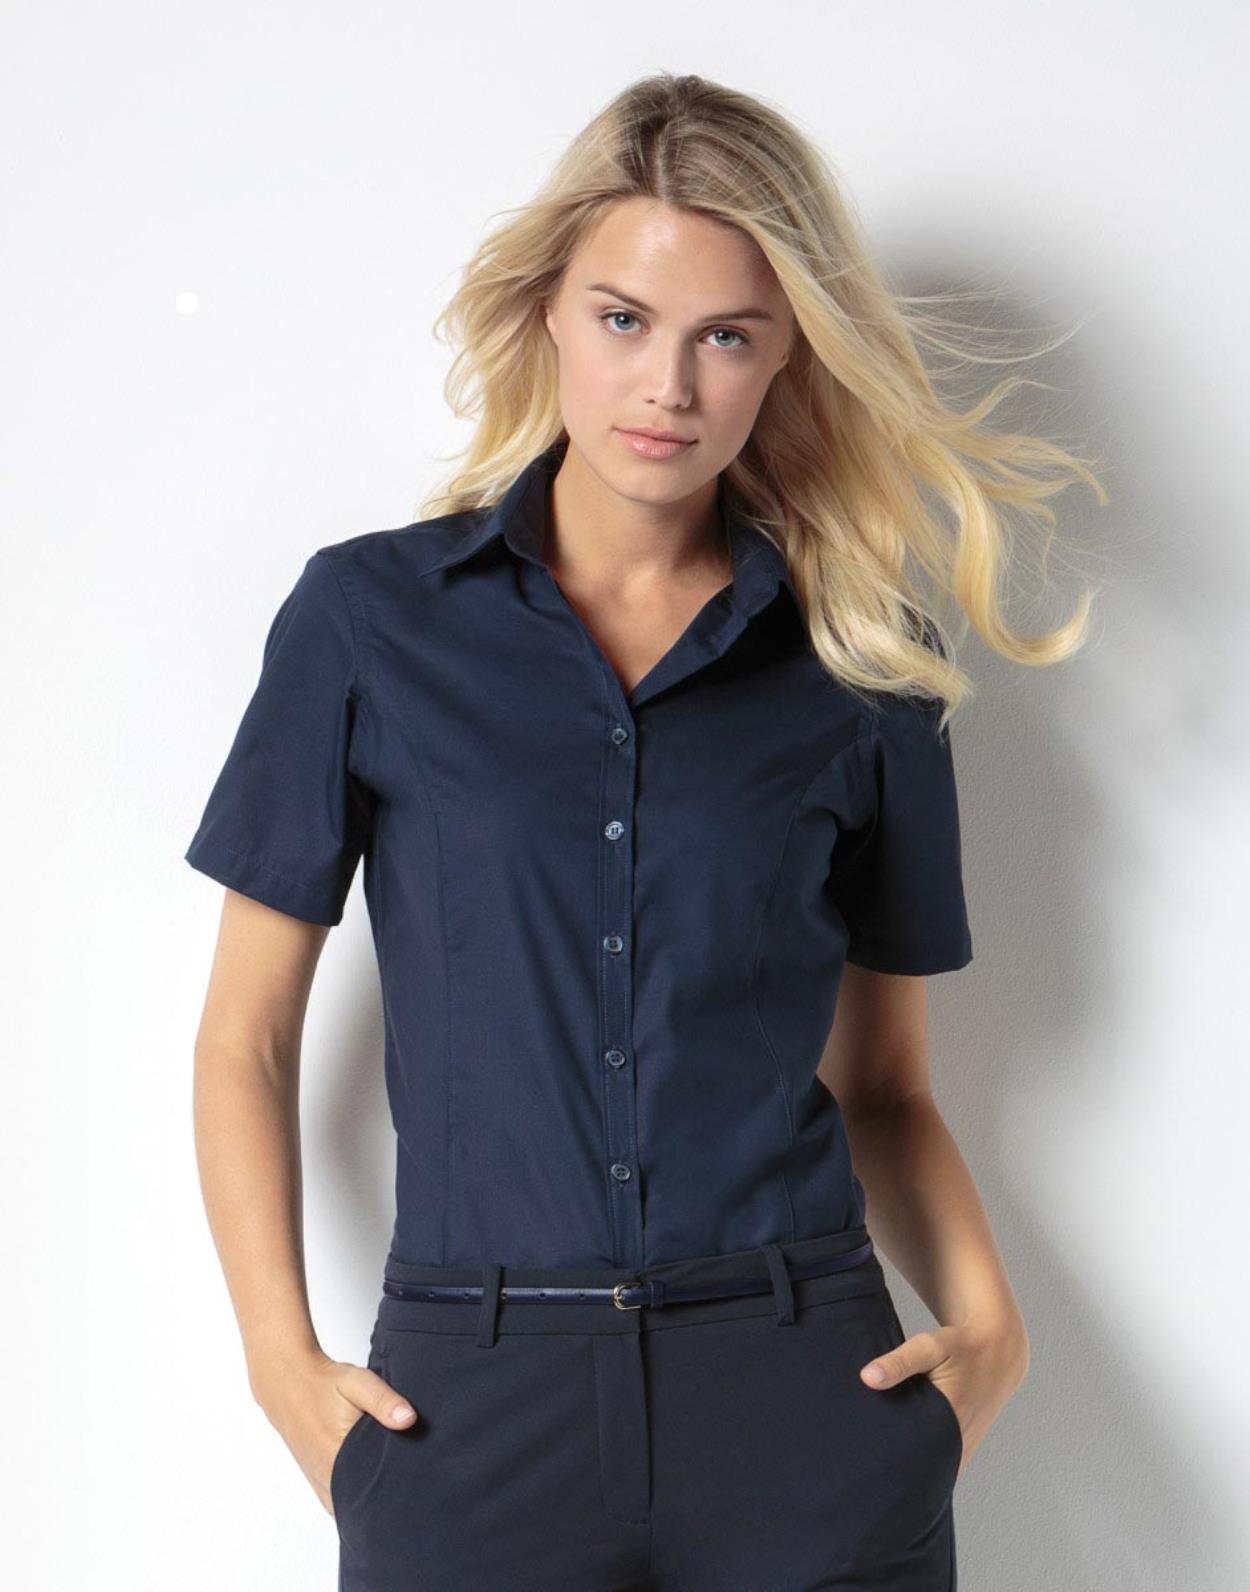 KK742 - Women's business blouse short sleeve